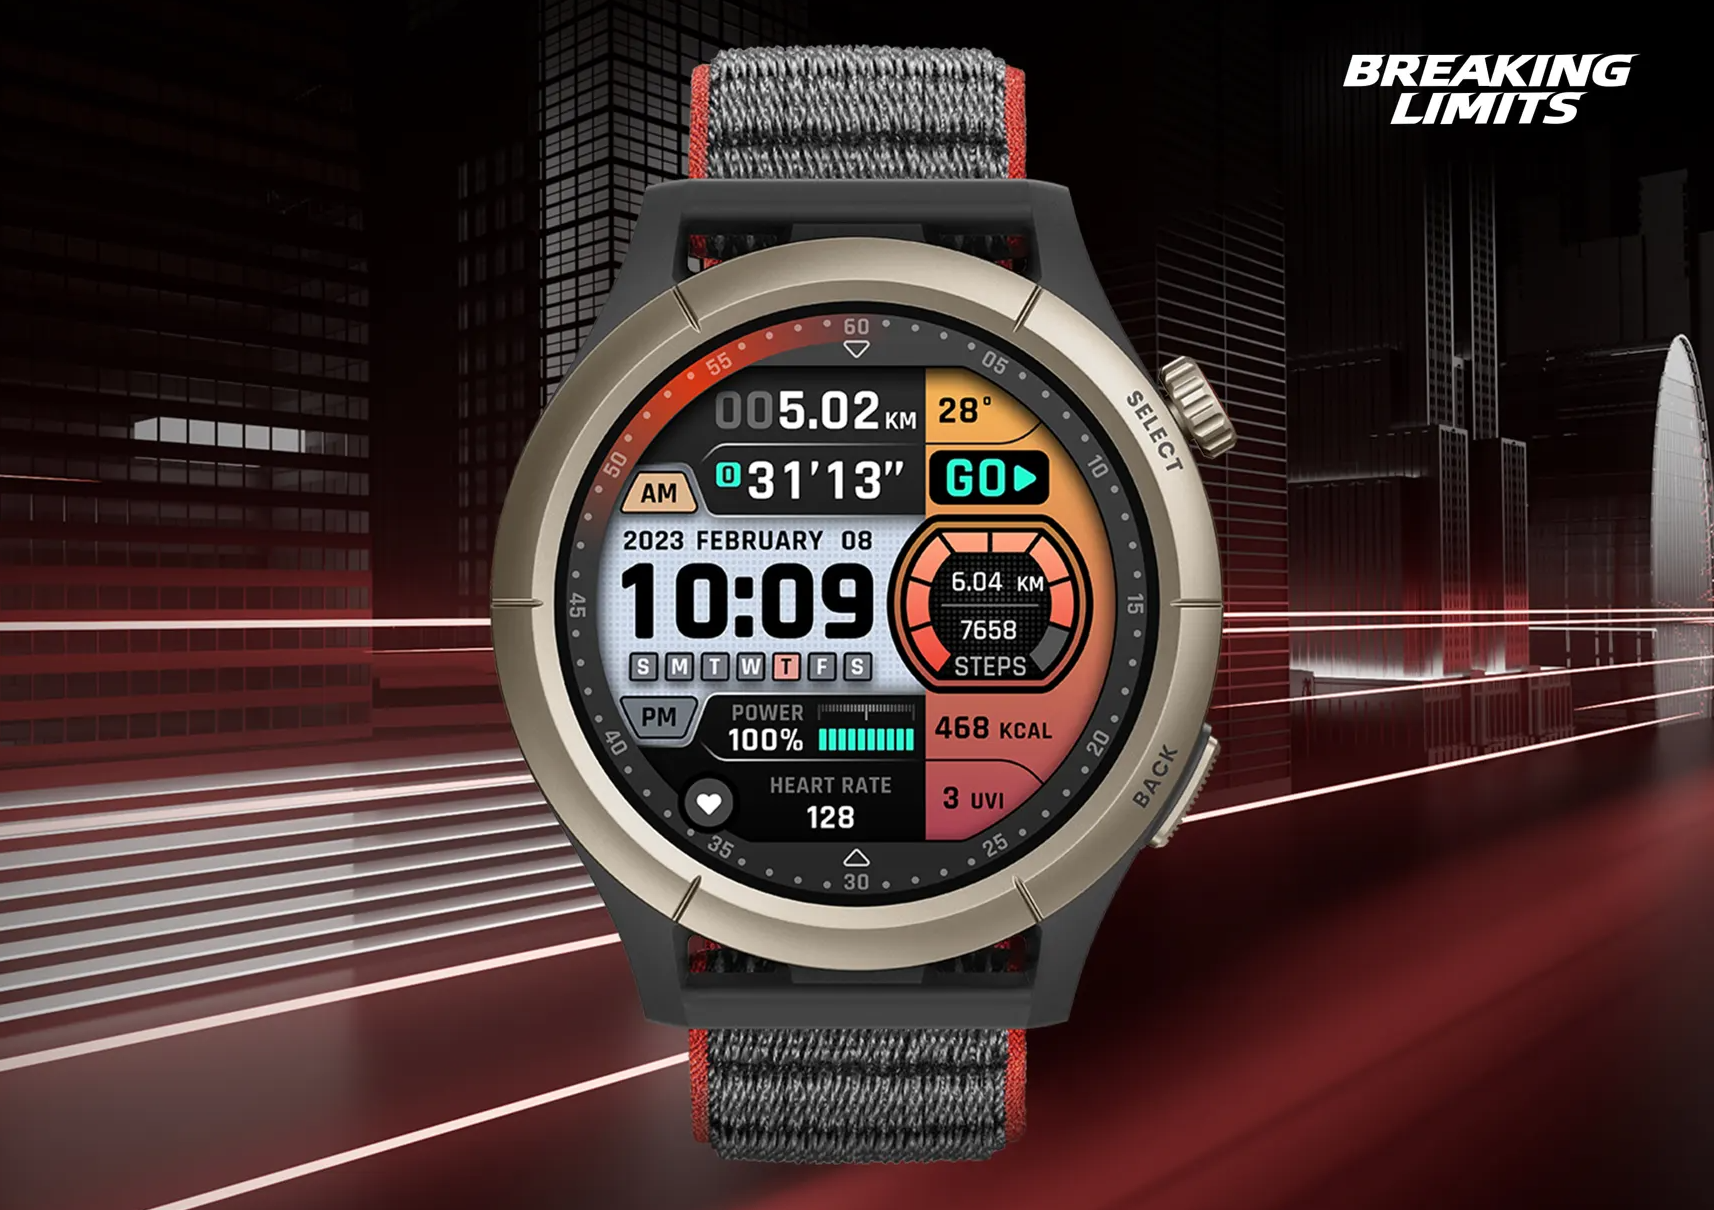 Smartwatch Amazfit Cheetah Speedster Grey Reloj Inteligente